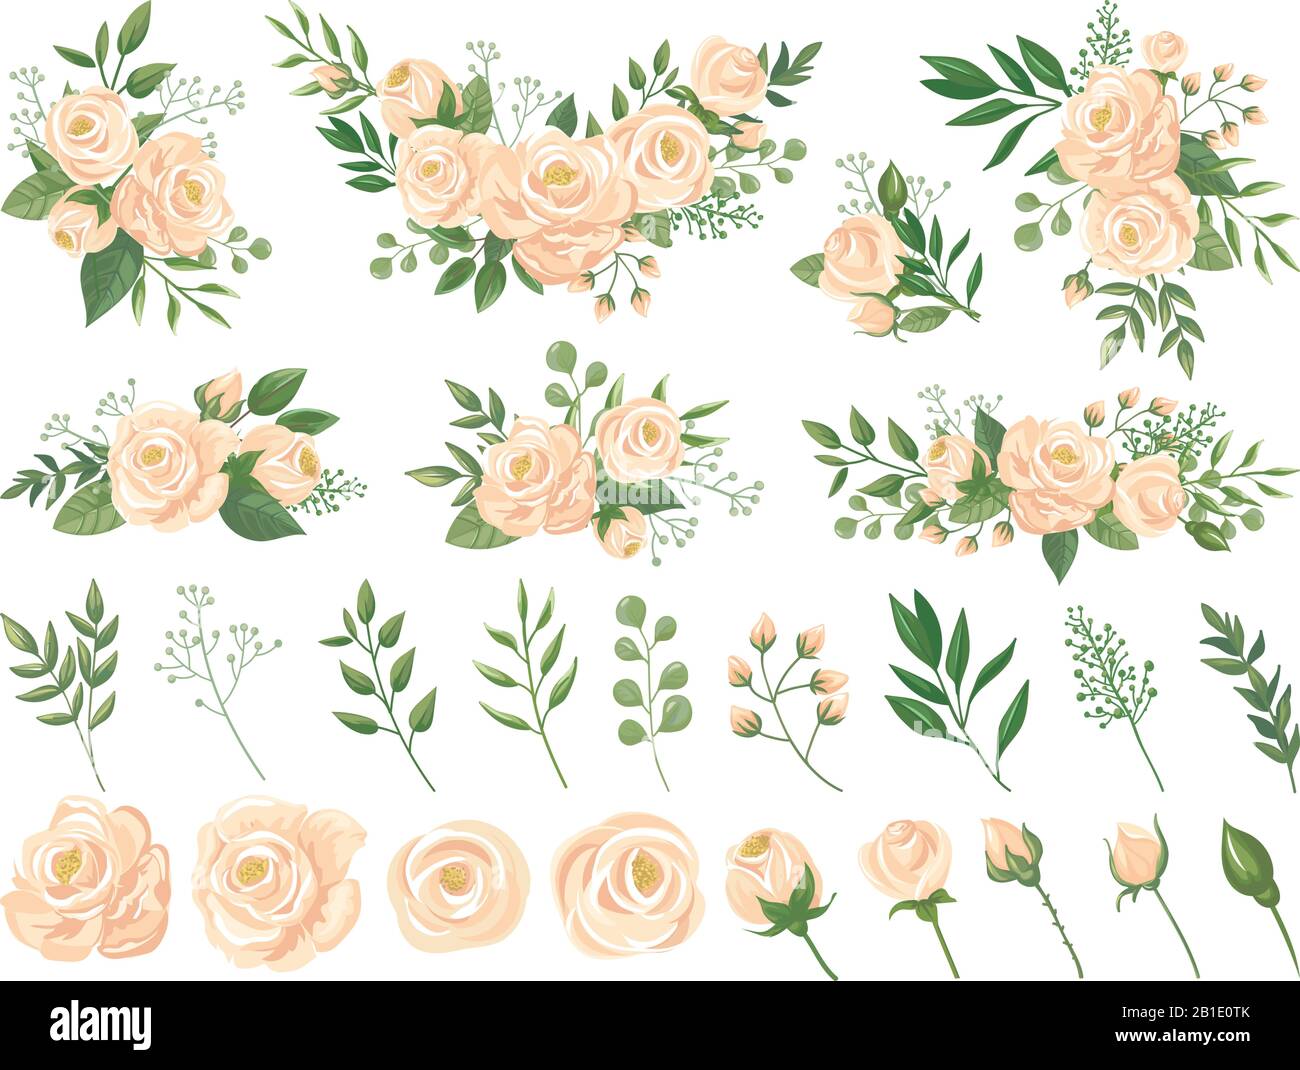 Bouquet floreale. Fiori di rosa, bouquet di rose da giardinaggio e boccioli di fiori di colori pastello con petali cartone animato set di illustrazioni vettoriali Illustrazione Vettoriale